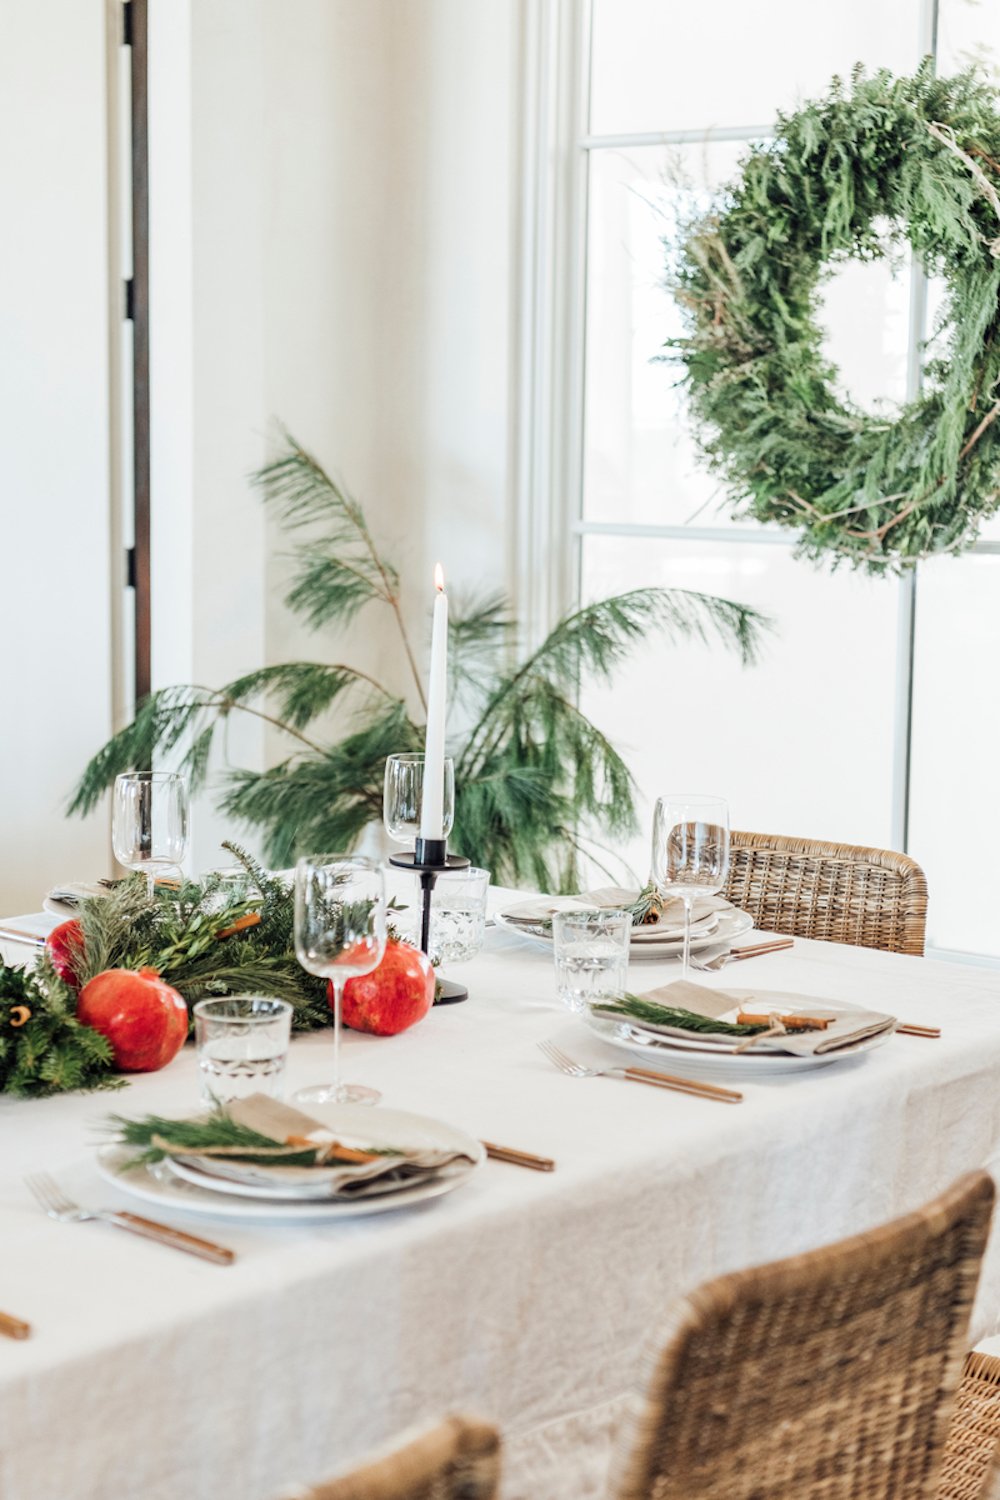 Mesa de vacaciones moderna con mantel blanco, copas de vino y bebidas modernas, platos blancos, servilletas de lino gris y centro de mesa de pino verde con granadas.